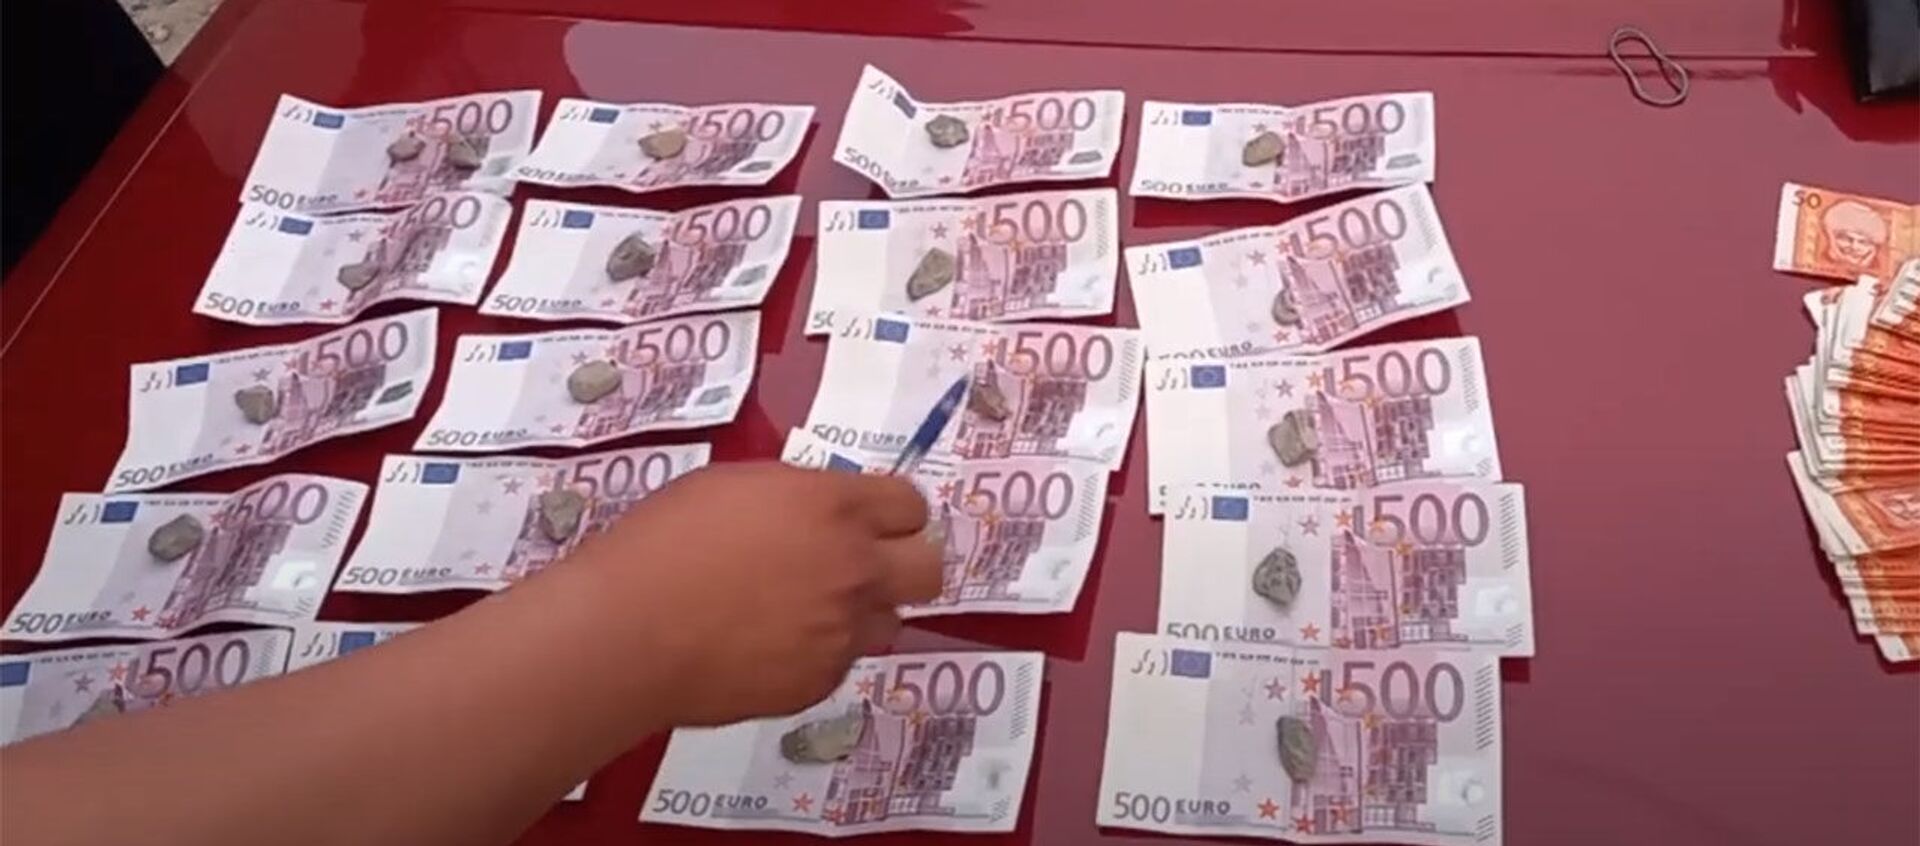 Осторожно! В Кыргызстане изъяли тысячи фальшивых евро — видео - Sputnik Кыргызстан, 1920, 04.06.2021